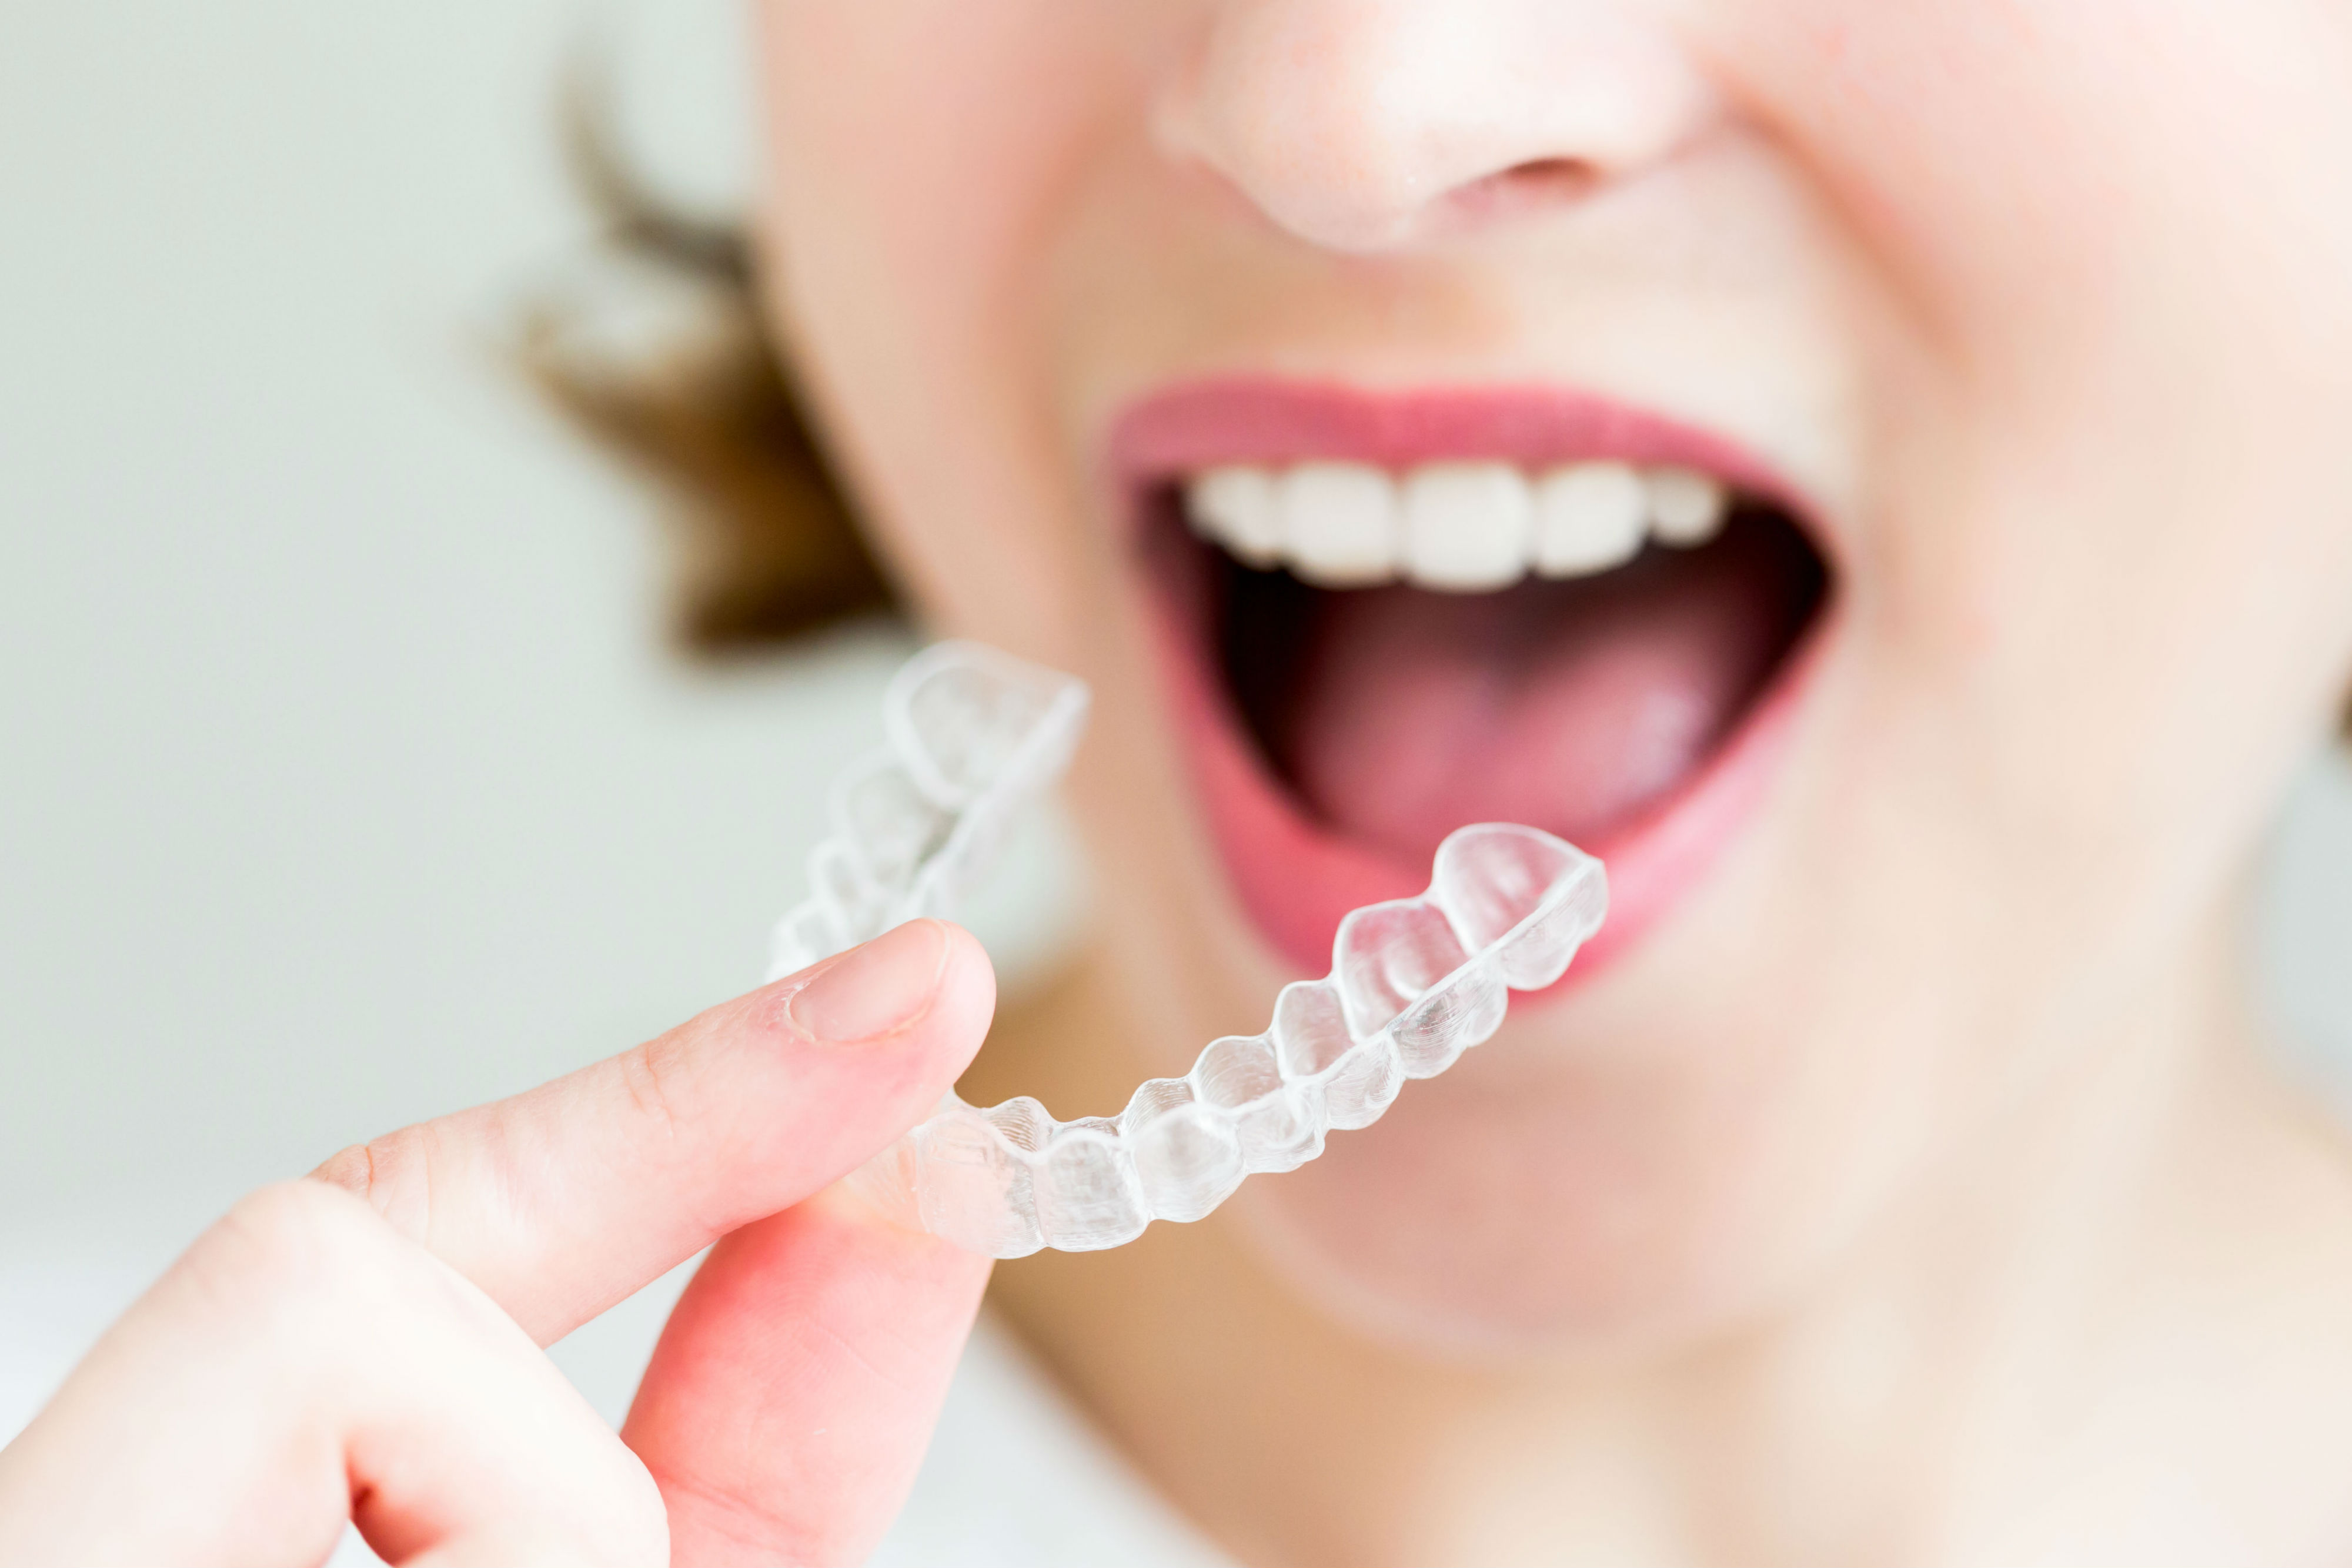 La ortodoncia Invisalign al mejor precio con las promociones de Clínica Dental Cuadrado de este mes de Febrero